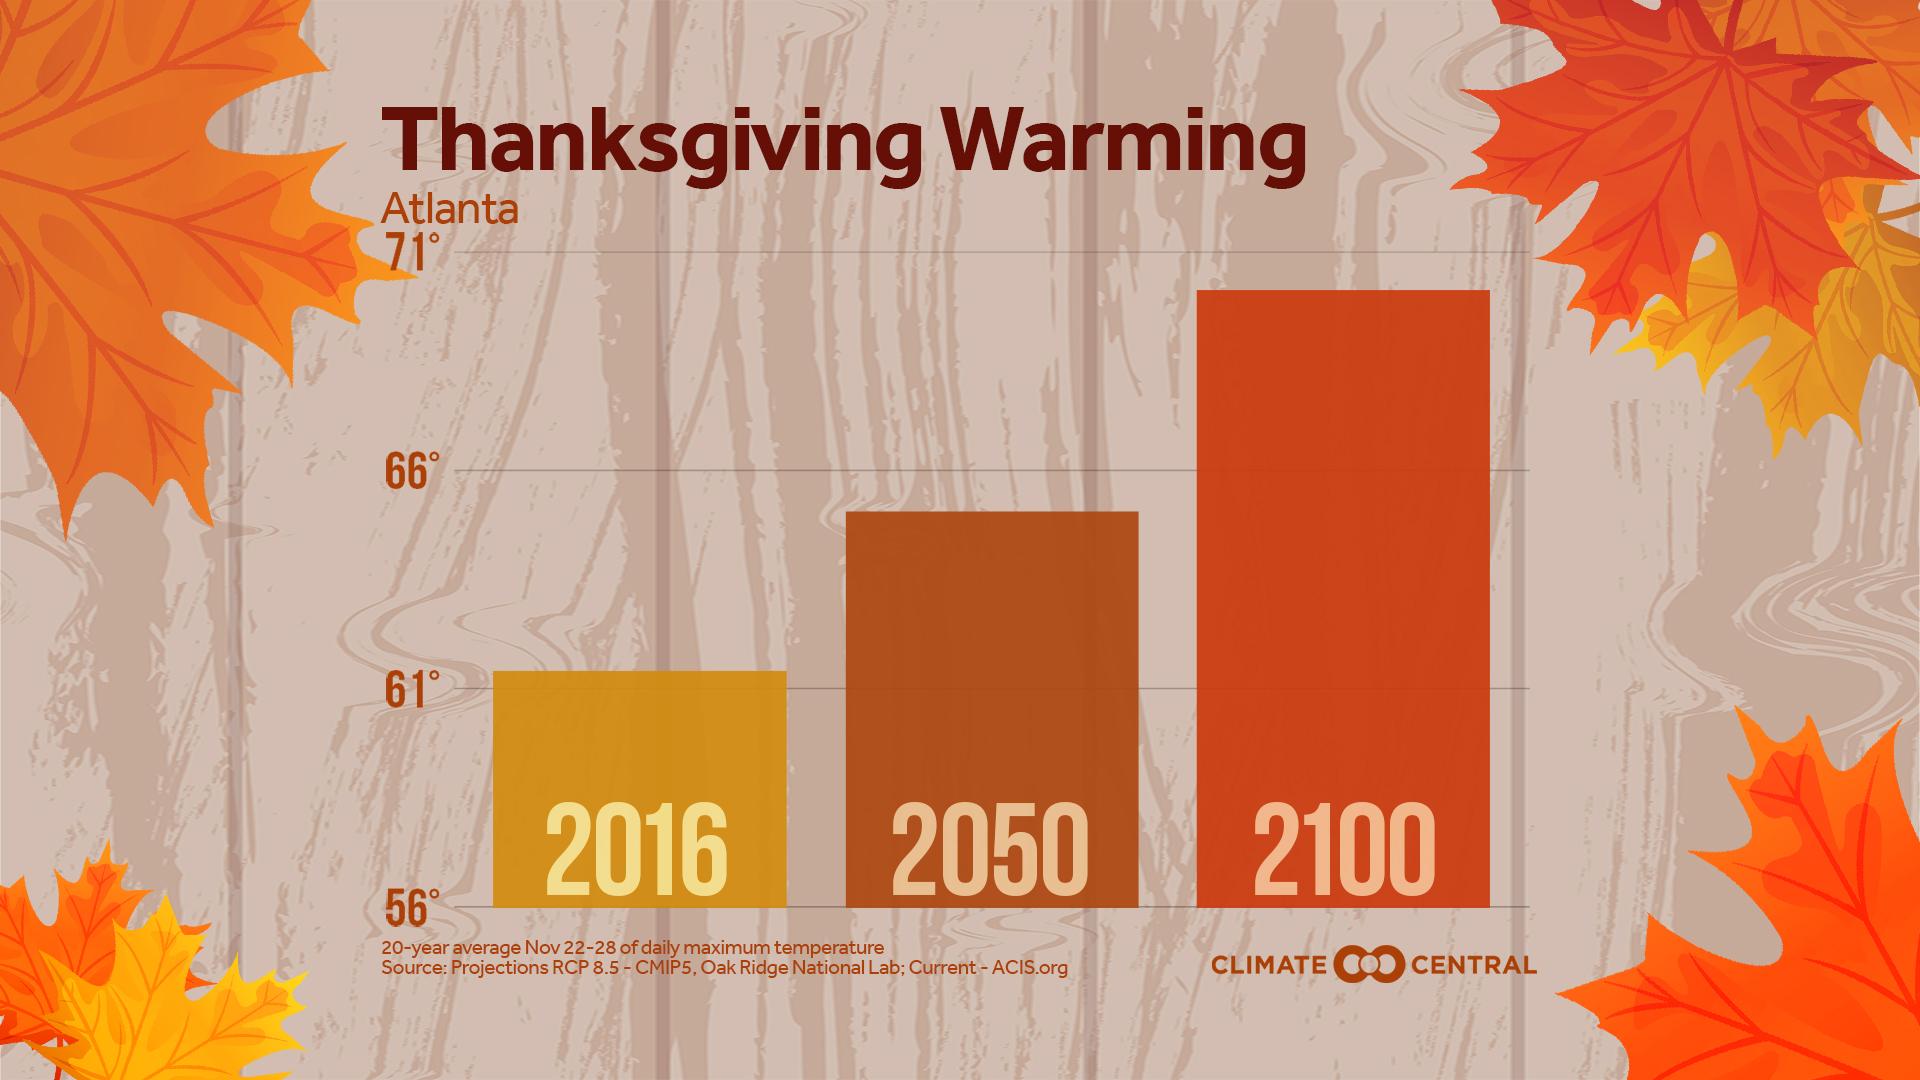 Market - Thanksgiving Warming & Food Waste